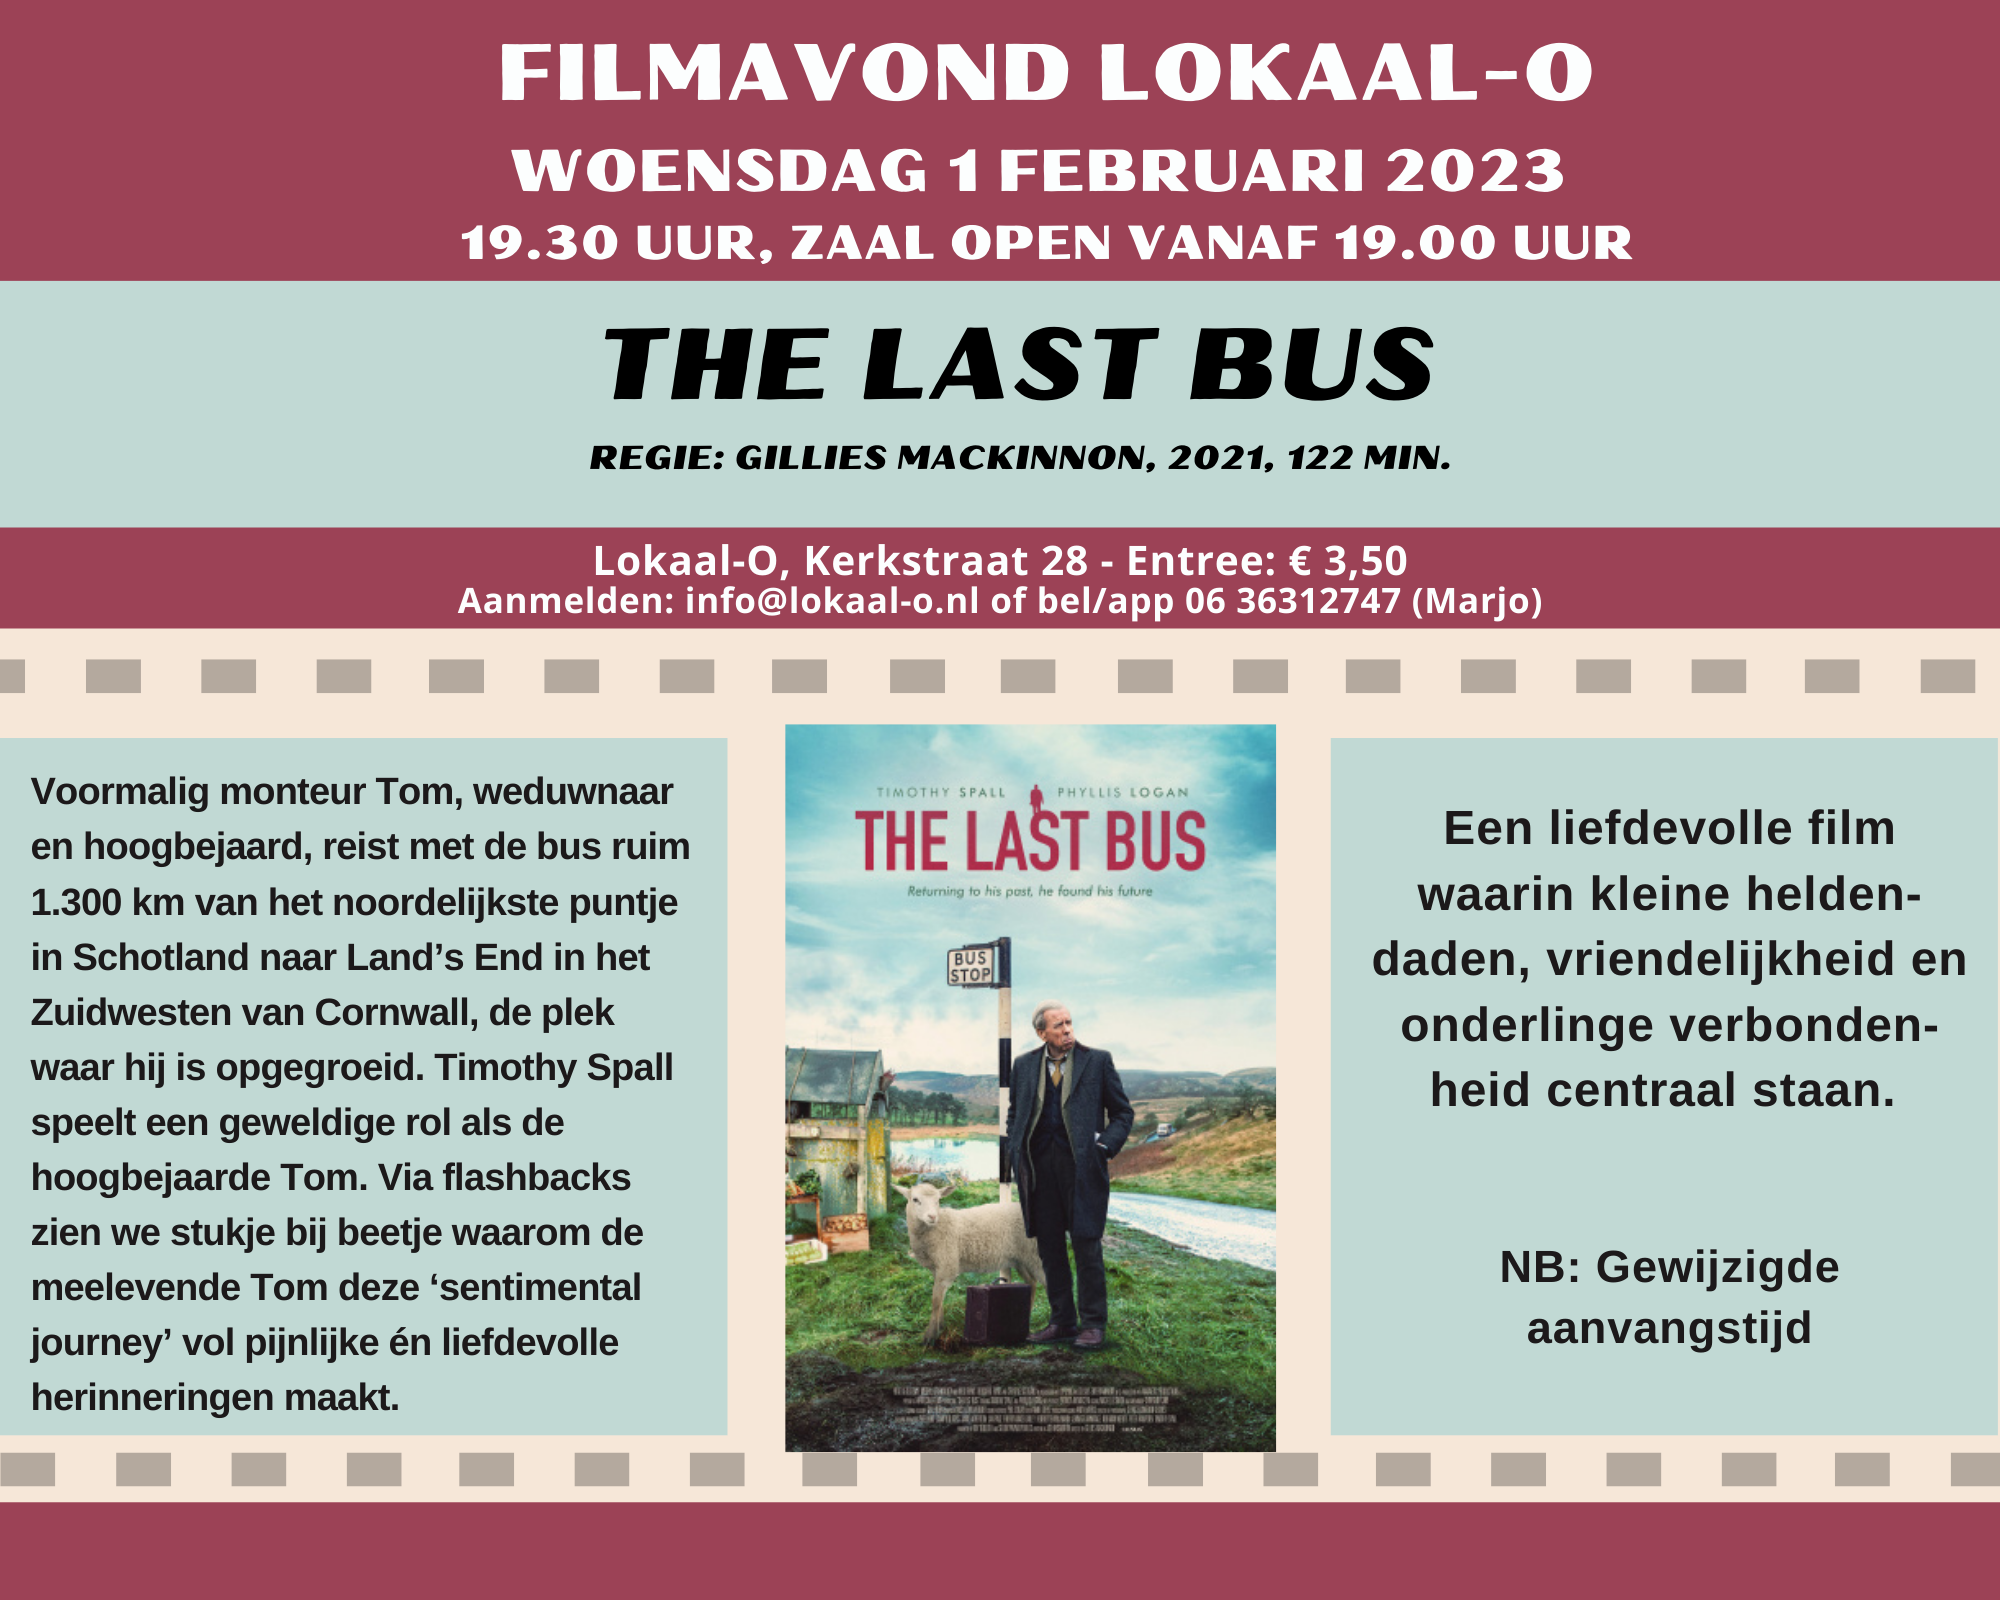 Je bekijkt nu Filmavond bij Lokaal-O: “The last bus”